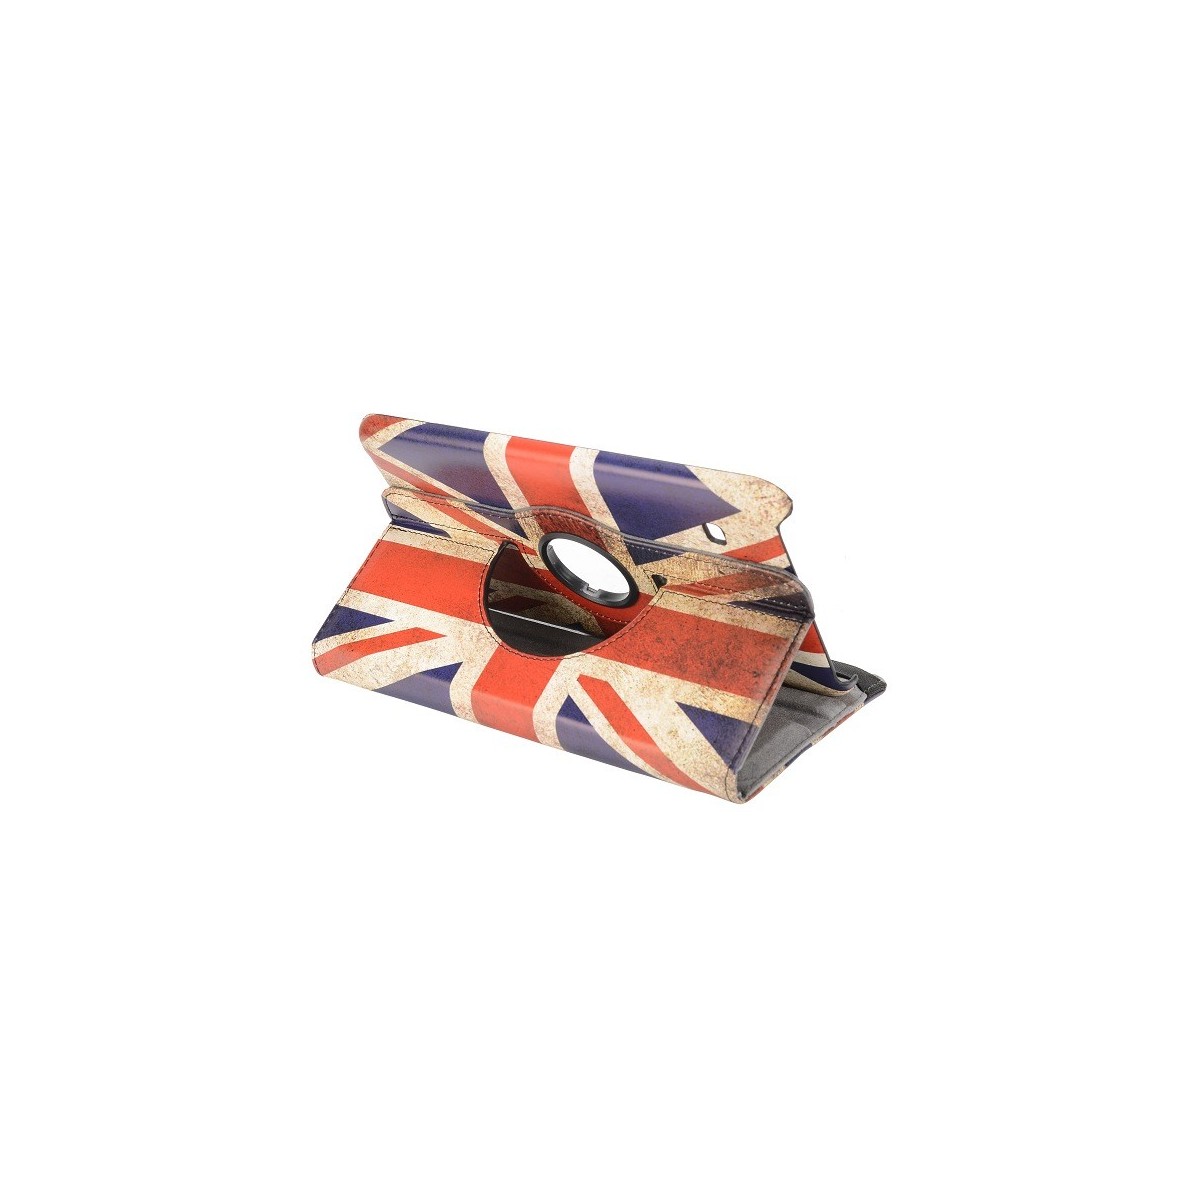 Etui Galaxy Tab 4 8.0 rotatif 360° drapeau UK